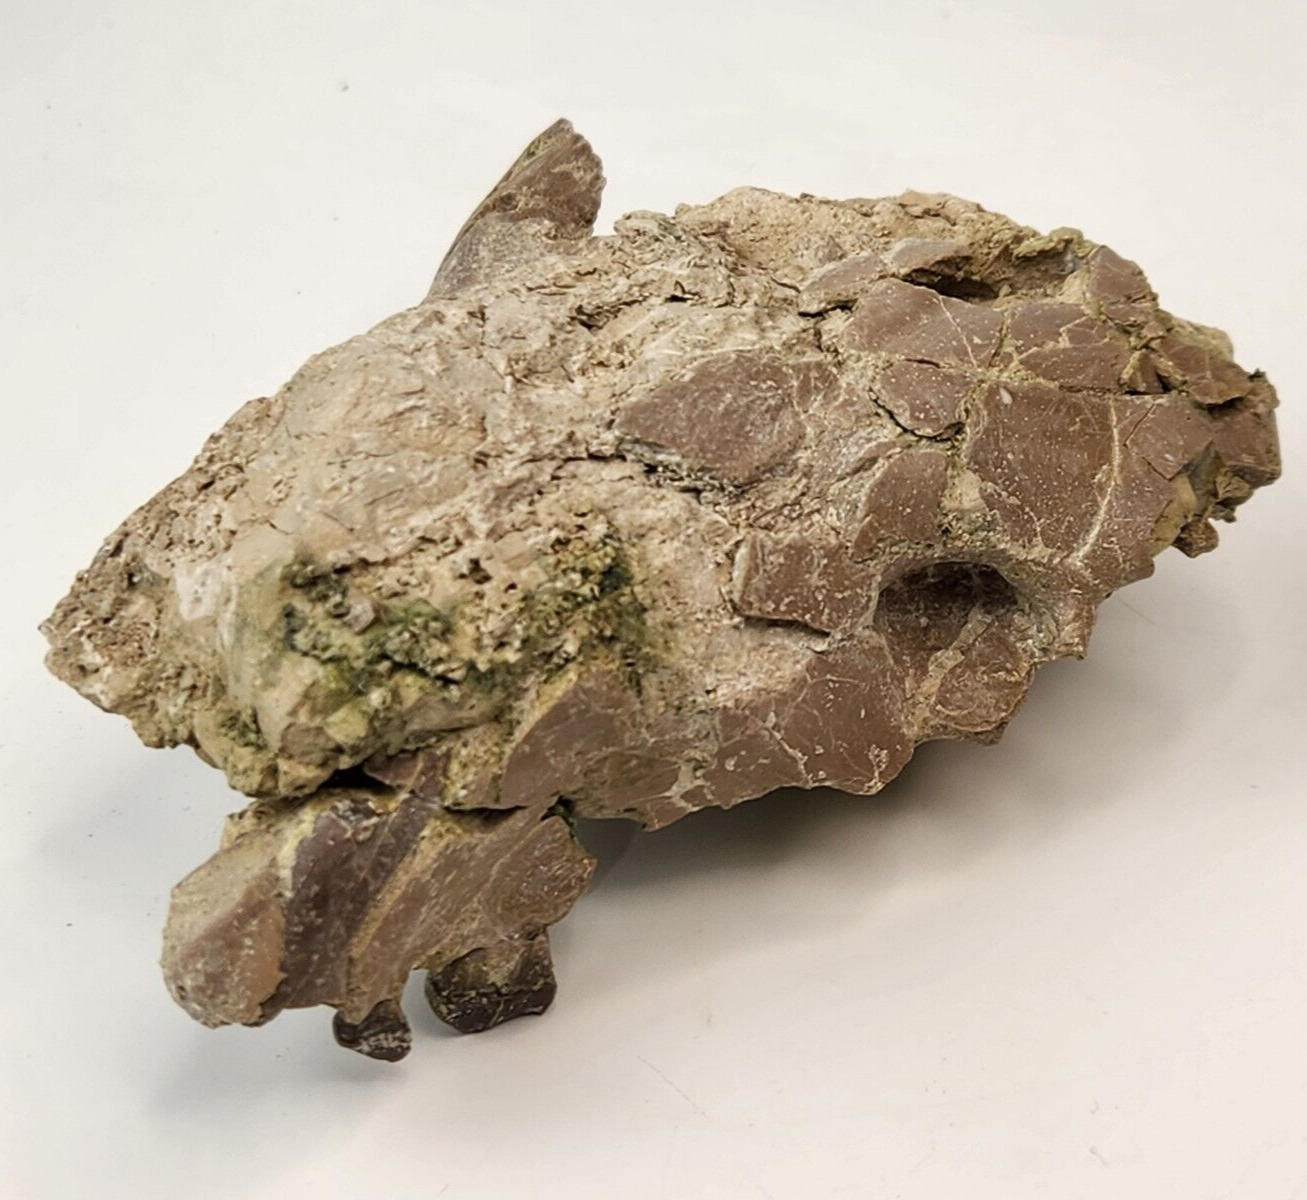 Oreodont Skull Fossil - White River Group - Brule Fm. - Crawford, NE - Oligocene